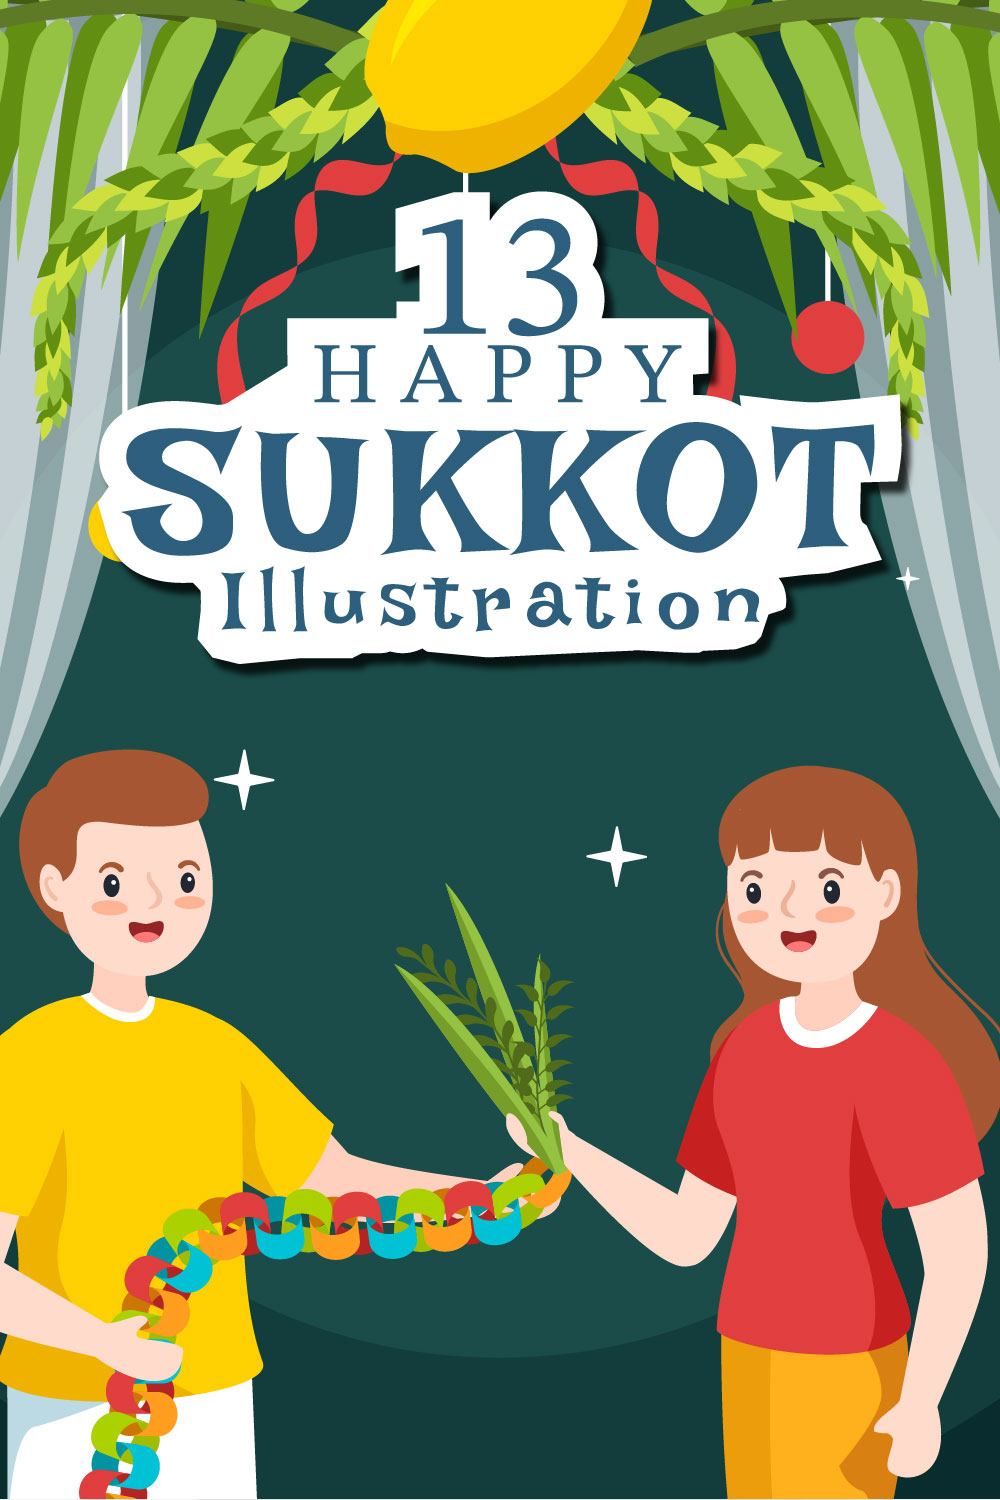 13 Jewish Holiday Sukkot Illustration Pinterest Image.